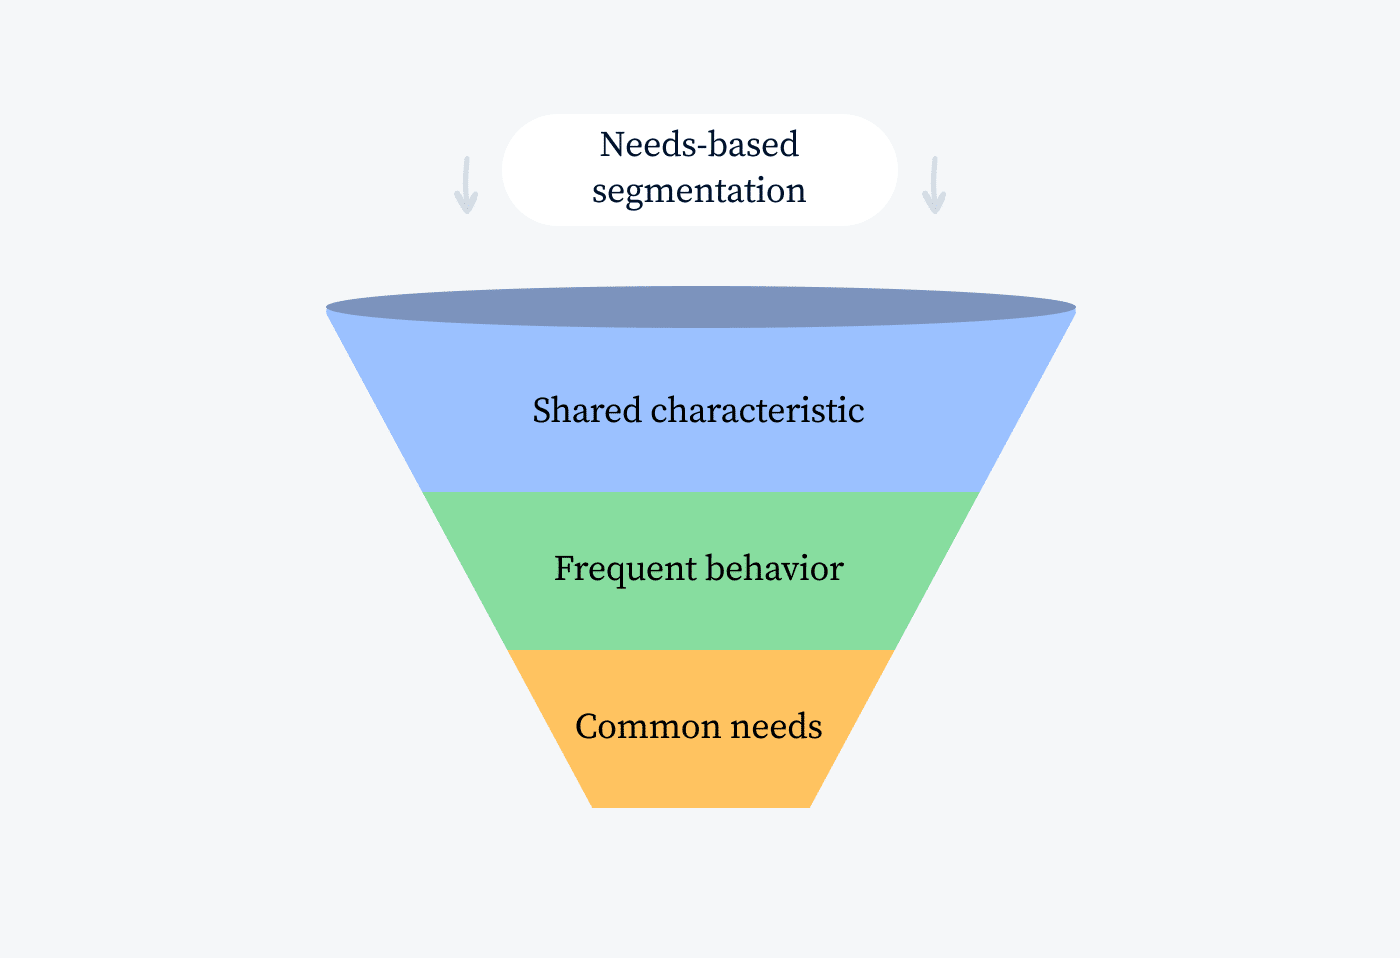 Needs-based segmentation image